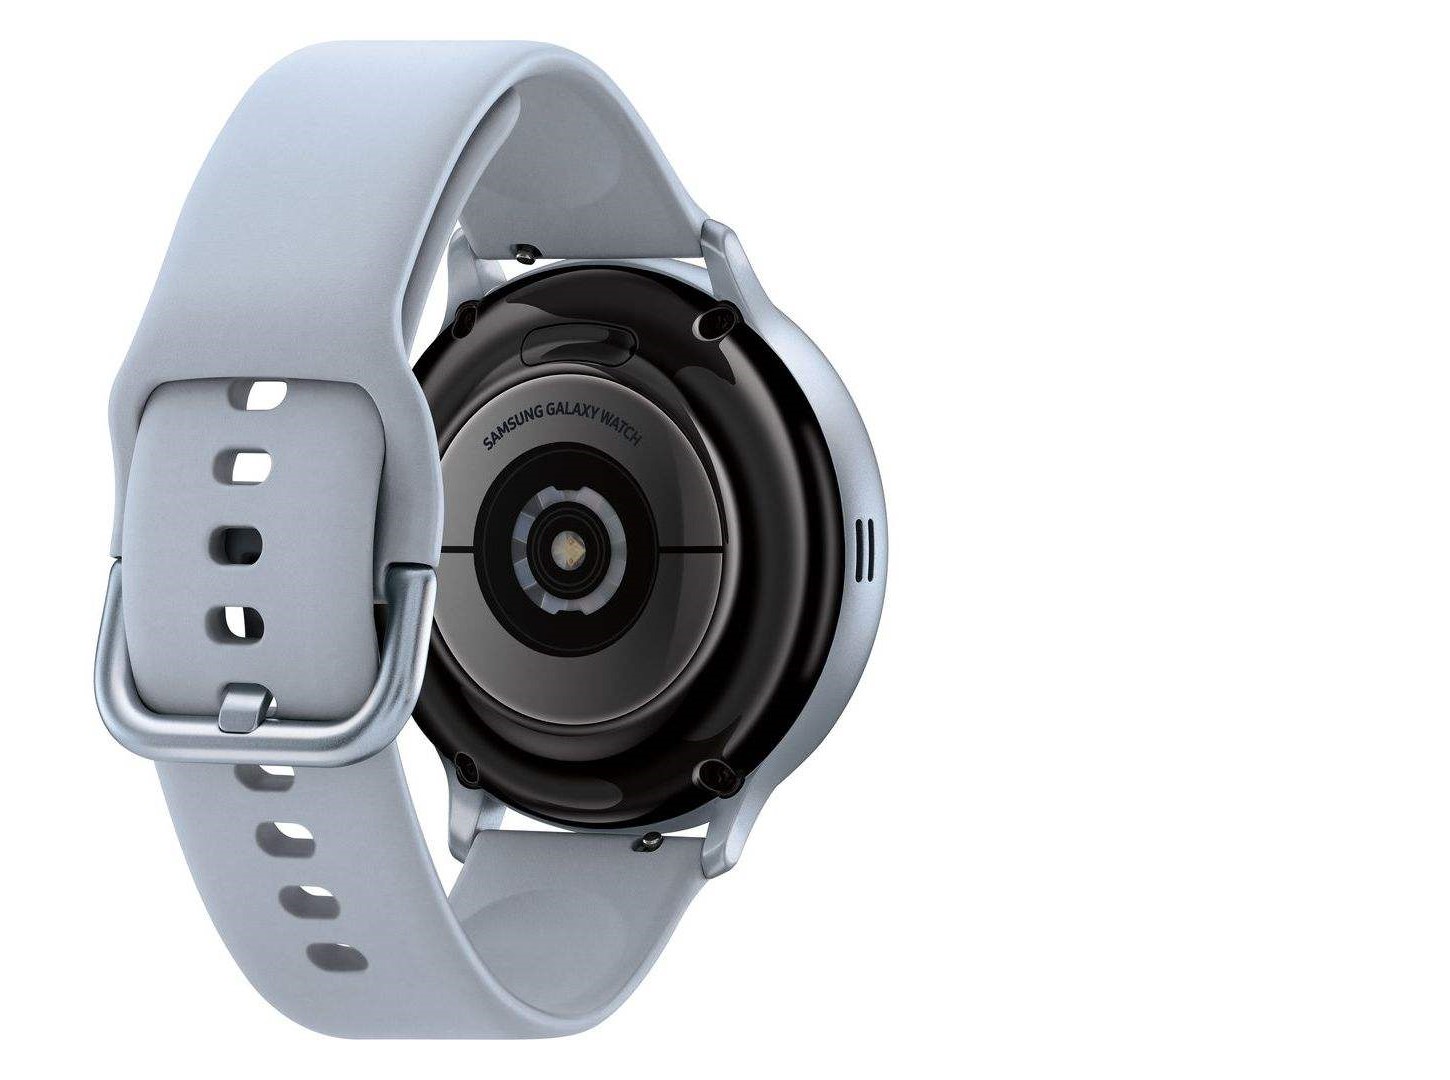 Samsung Galaxy Watch Active2 44mm Smart Watch